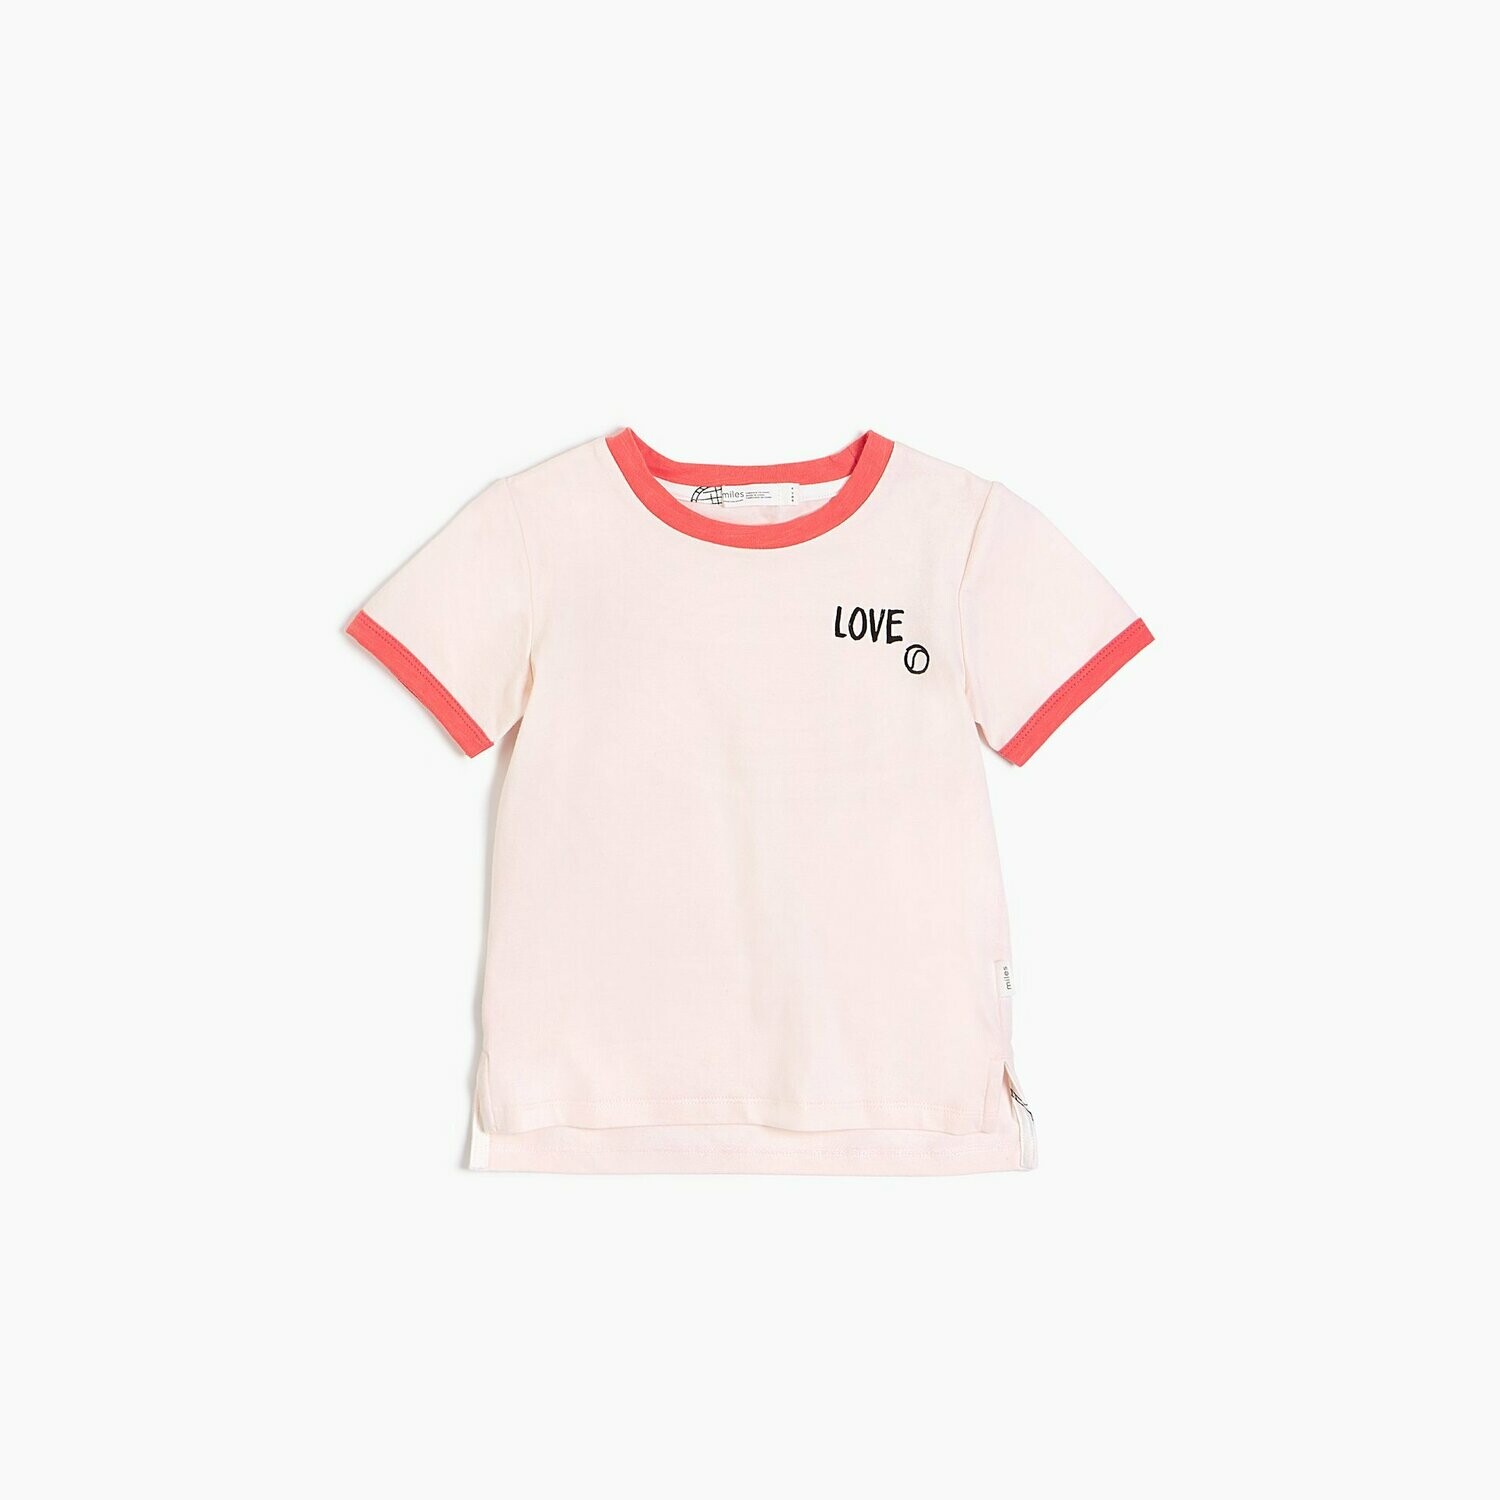 Miles "Love" Racquet Shirt - Pink